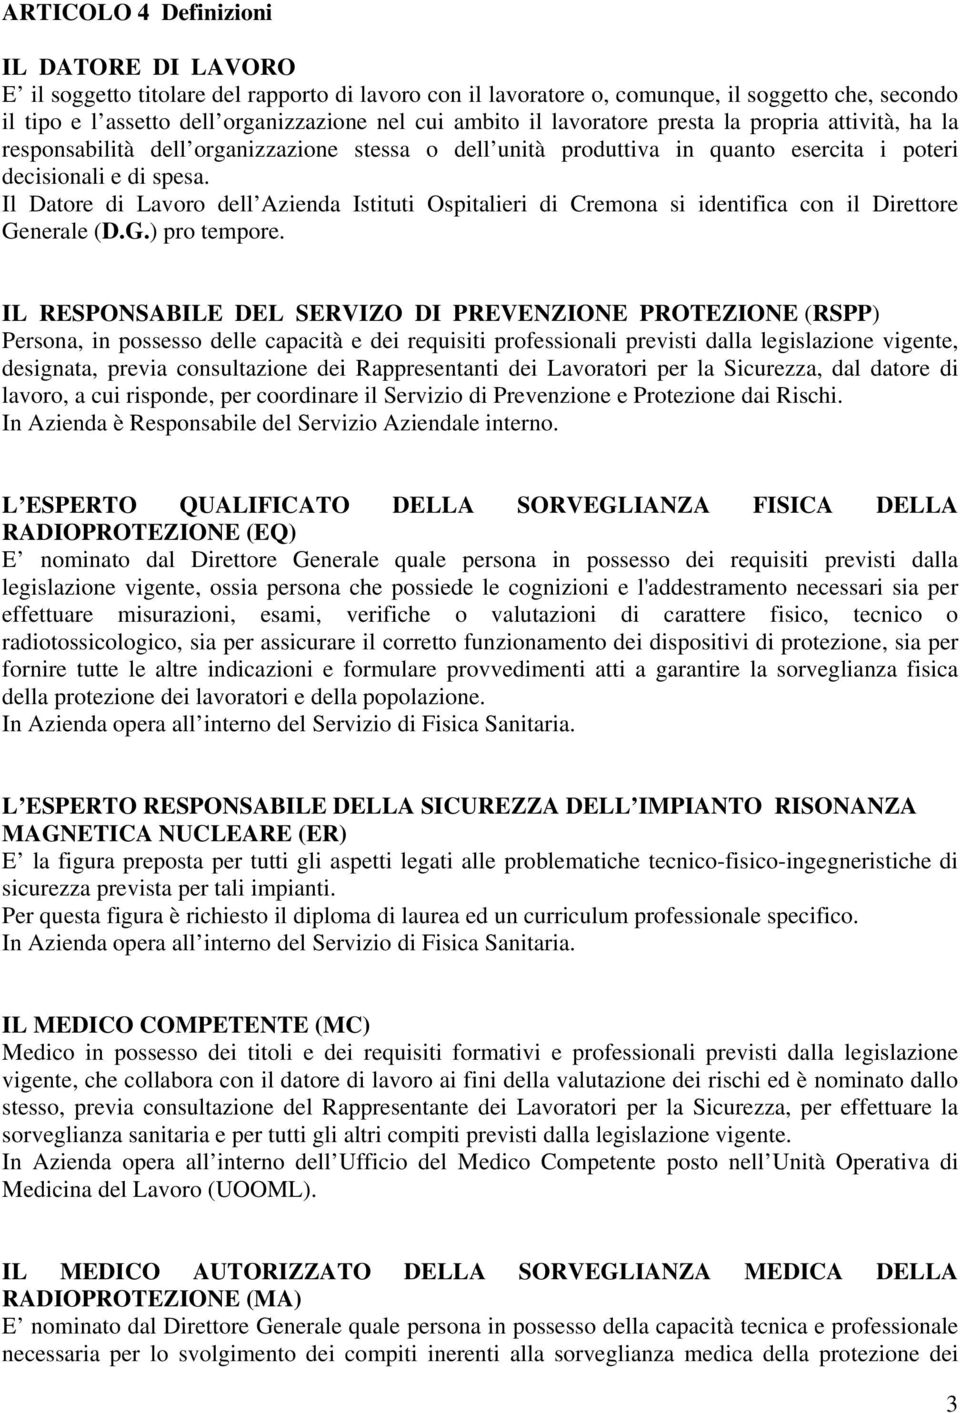 Il Datore di Lavoro dell Azienda Istituti Ospitalieri di Cremona si identifica con il Direttore Generale (D.G.) pro tempore.